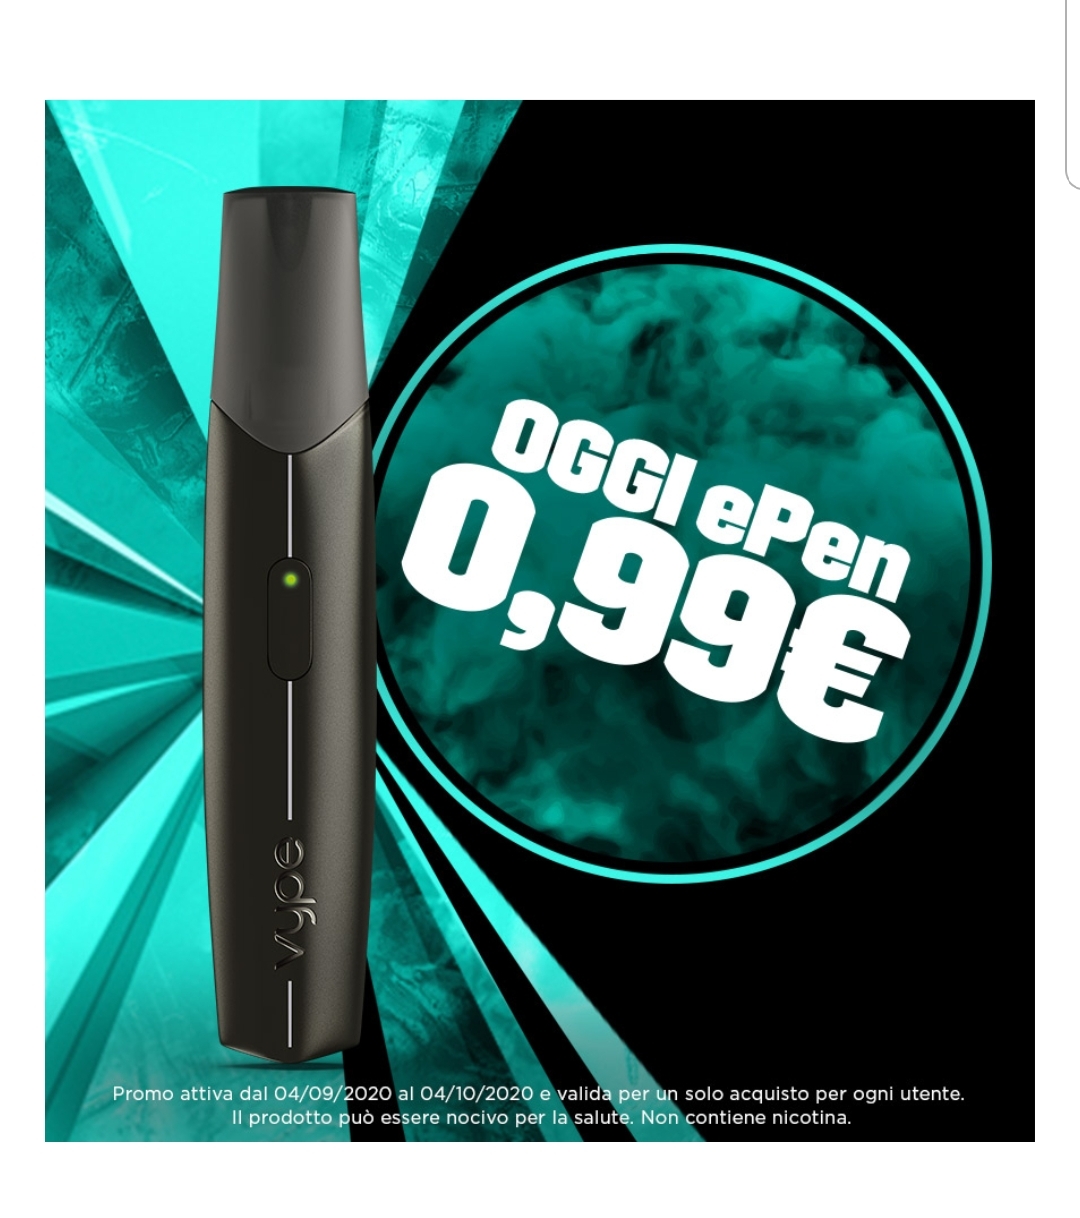 Sigaretta elettronica a 0,99€